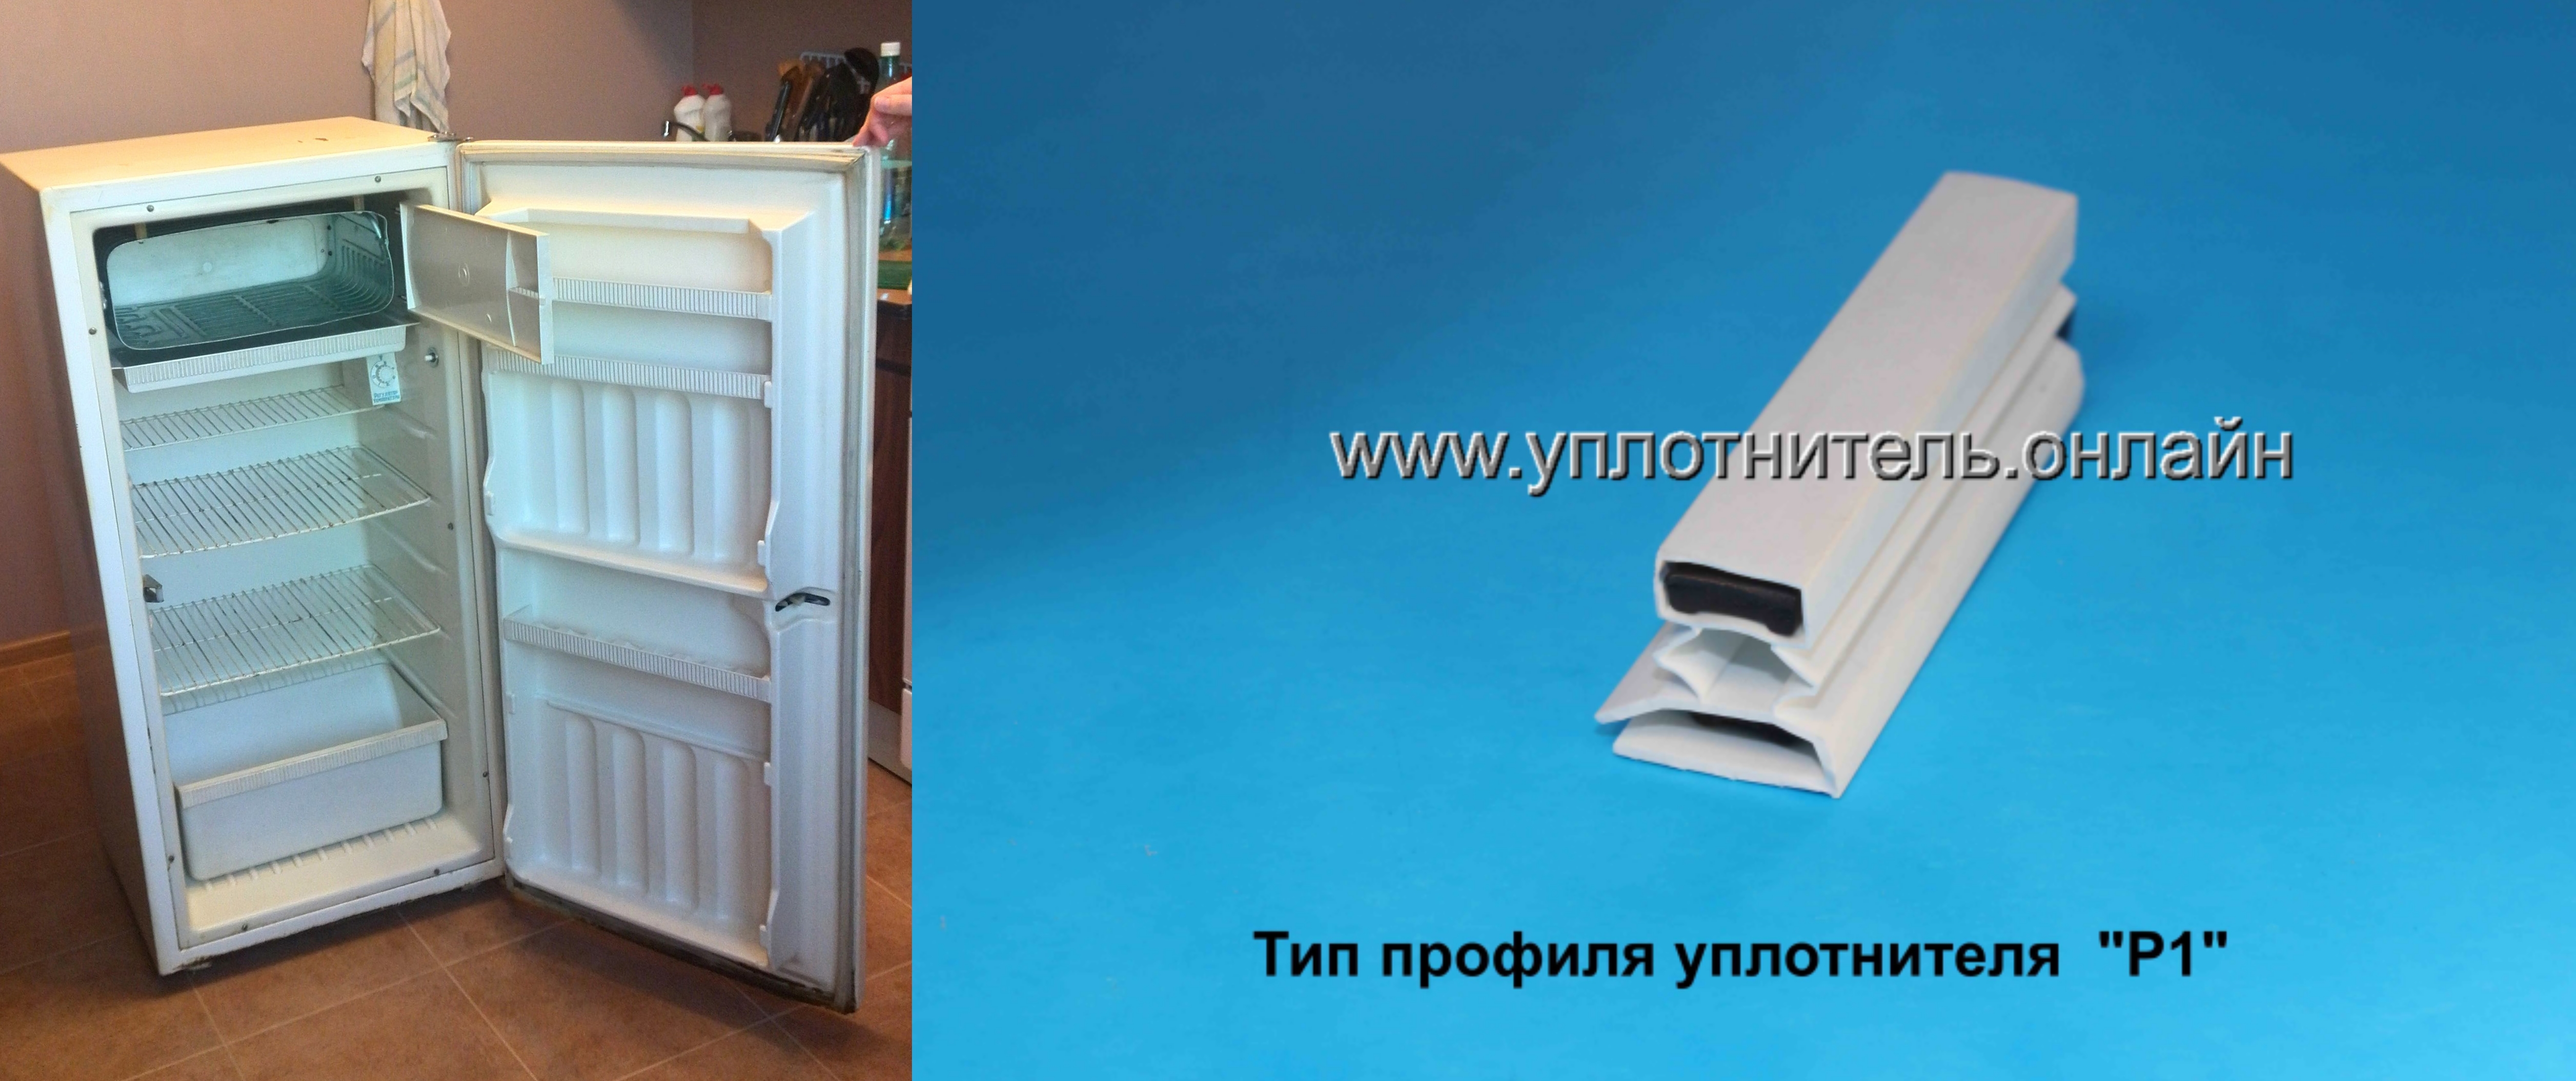 Где Купить В Омске Уплотнитель Для Холодильника